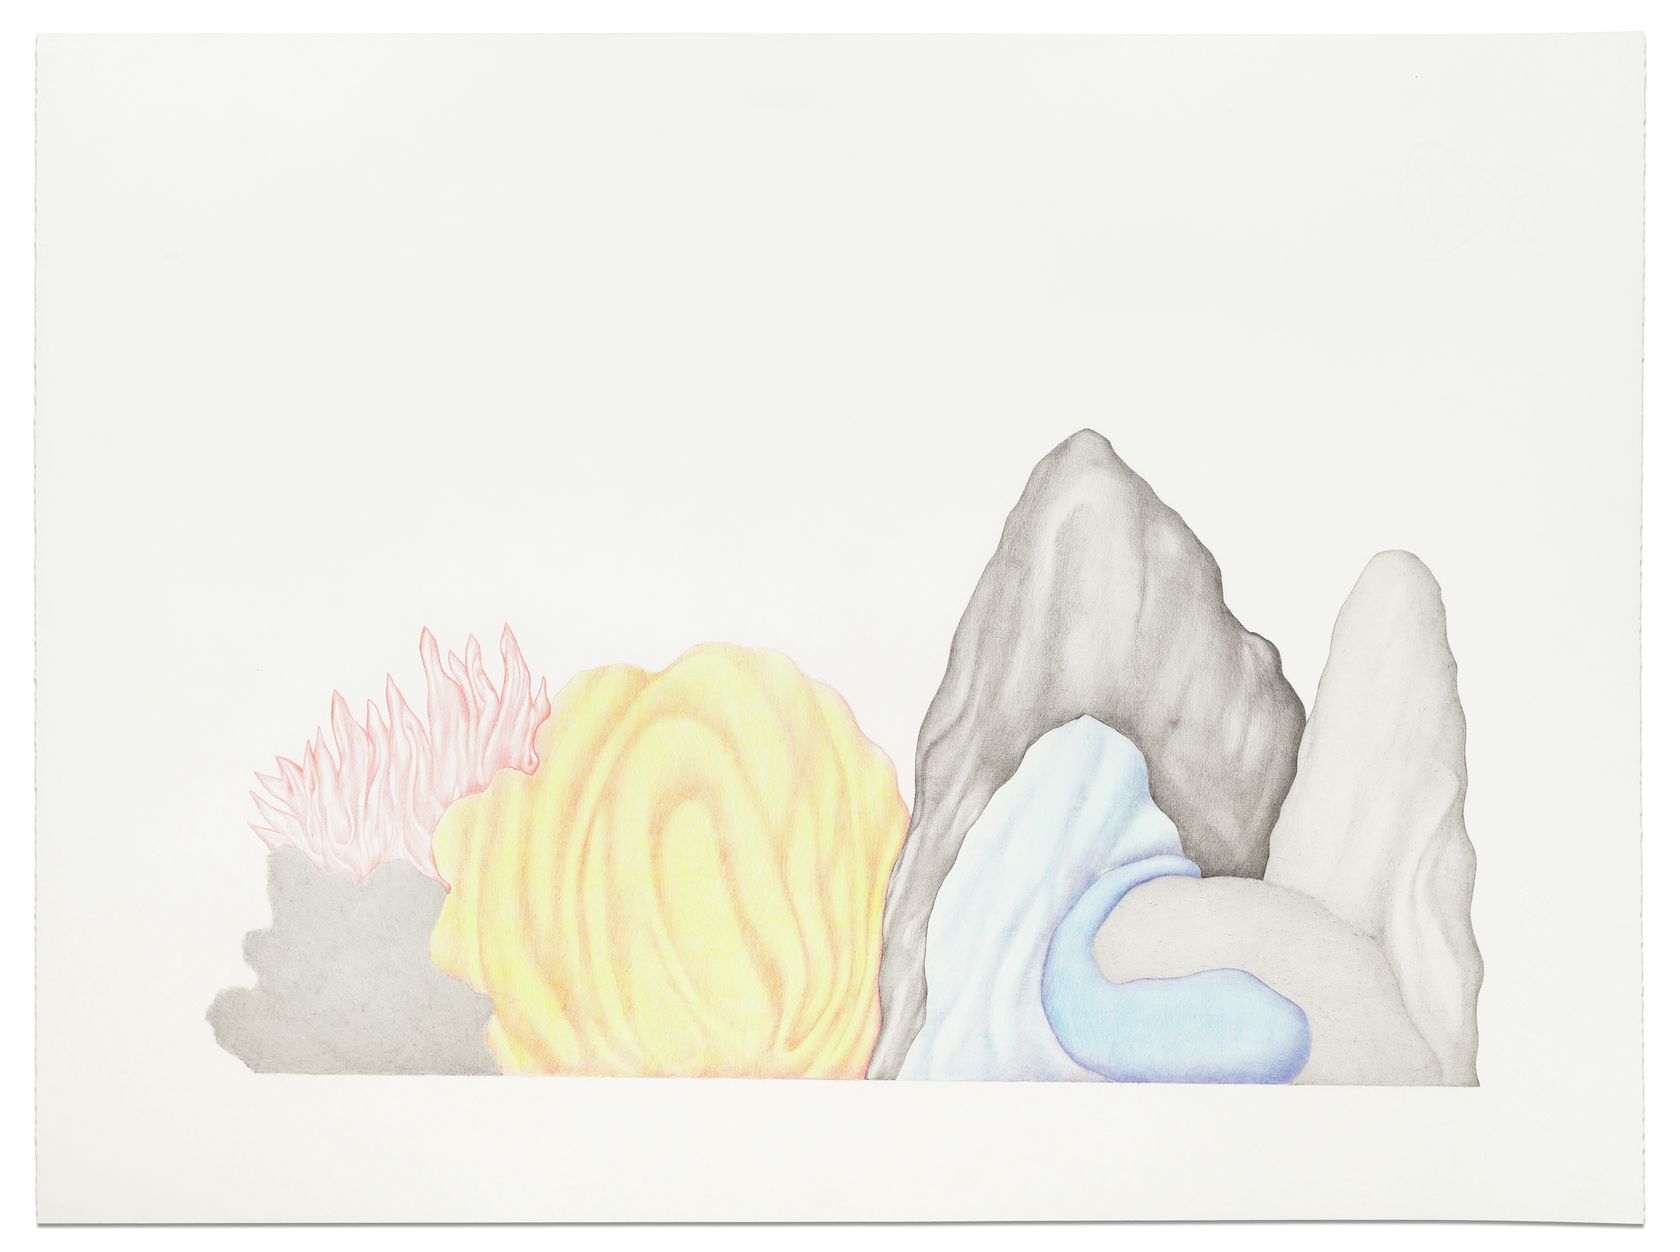 Guillaume Dégé, Sans titre, 2011 Crayon de couleur sur papier48 × 65 cm / 18 7/8 × 25 5/8 in. | 68 × 83 × 2.5 cm / 26 6/8 × 32 5/8 × 1  in. (encadré/framed)